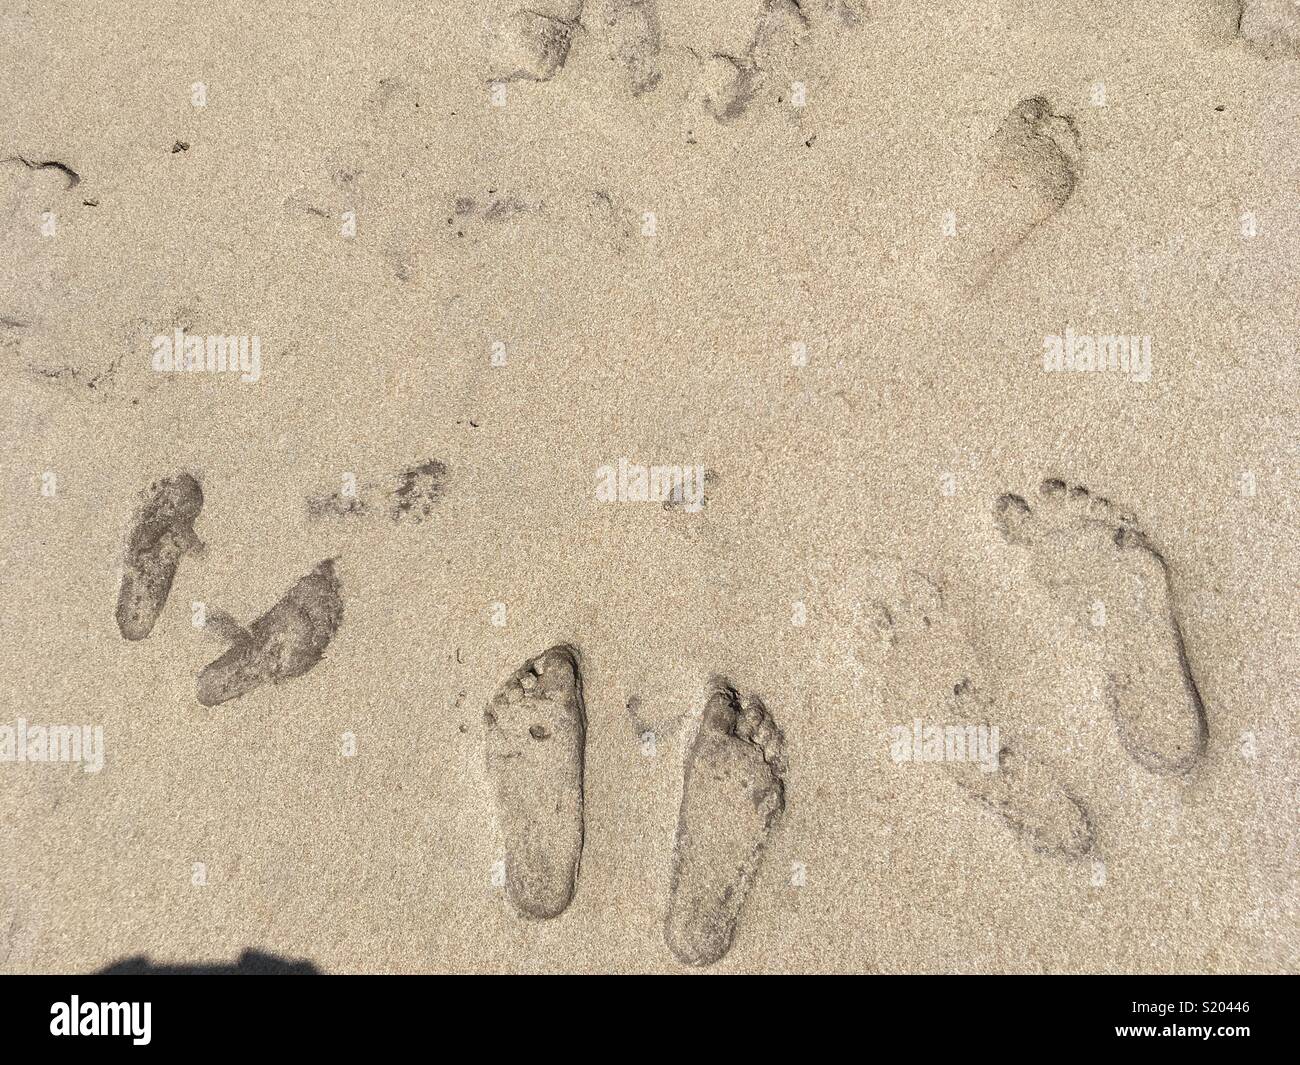 Family footprints Stock Photo